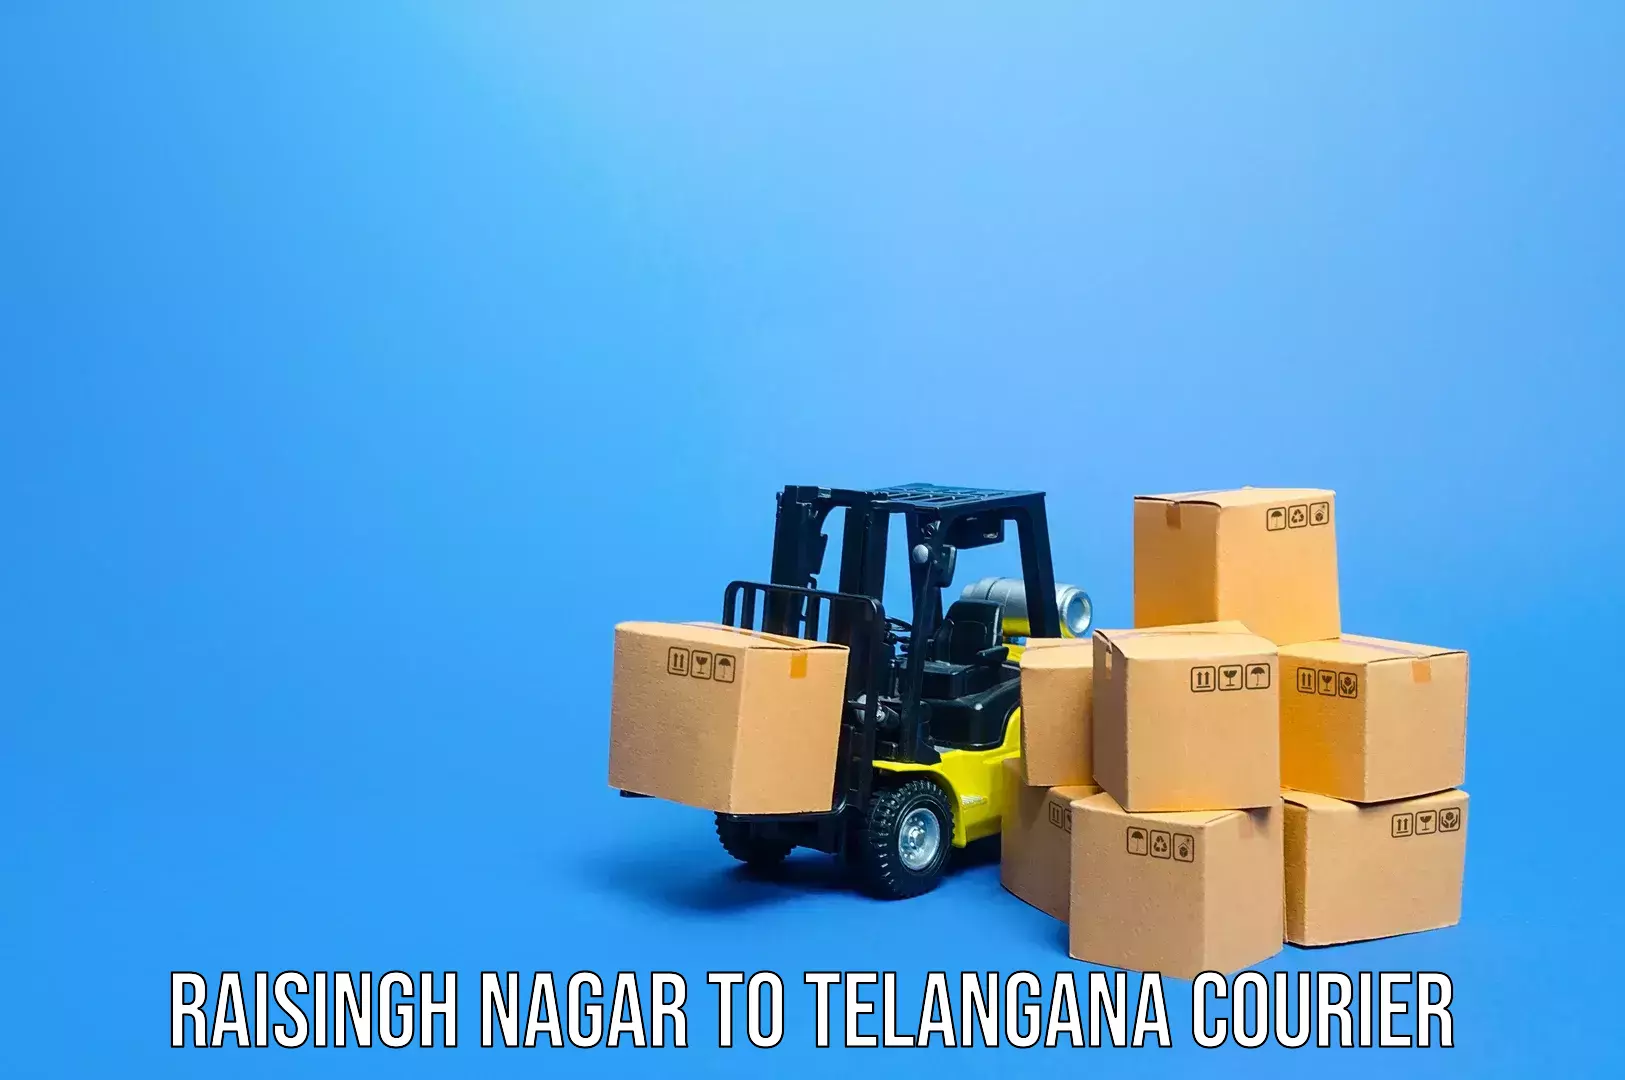 Luggage courier network Raisingh Nagar to Bhainsa